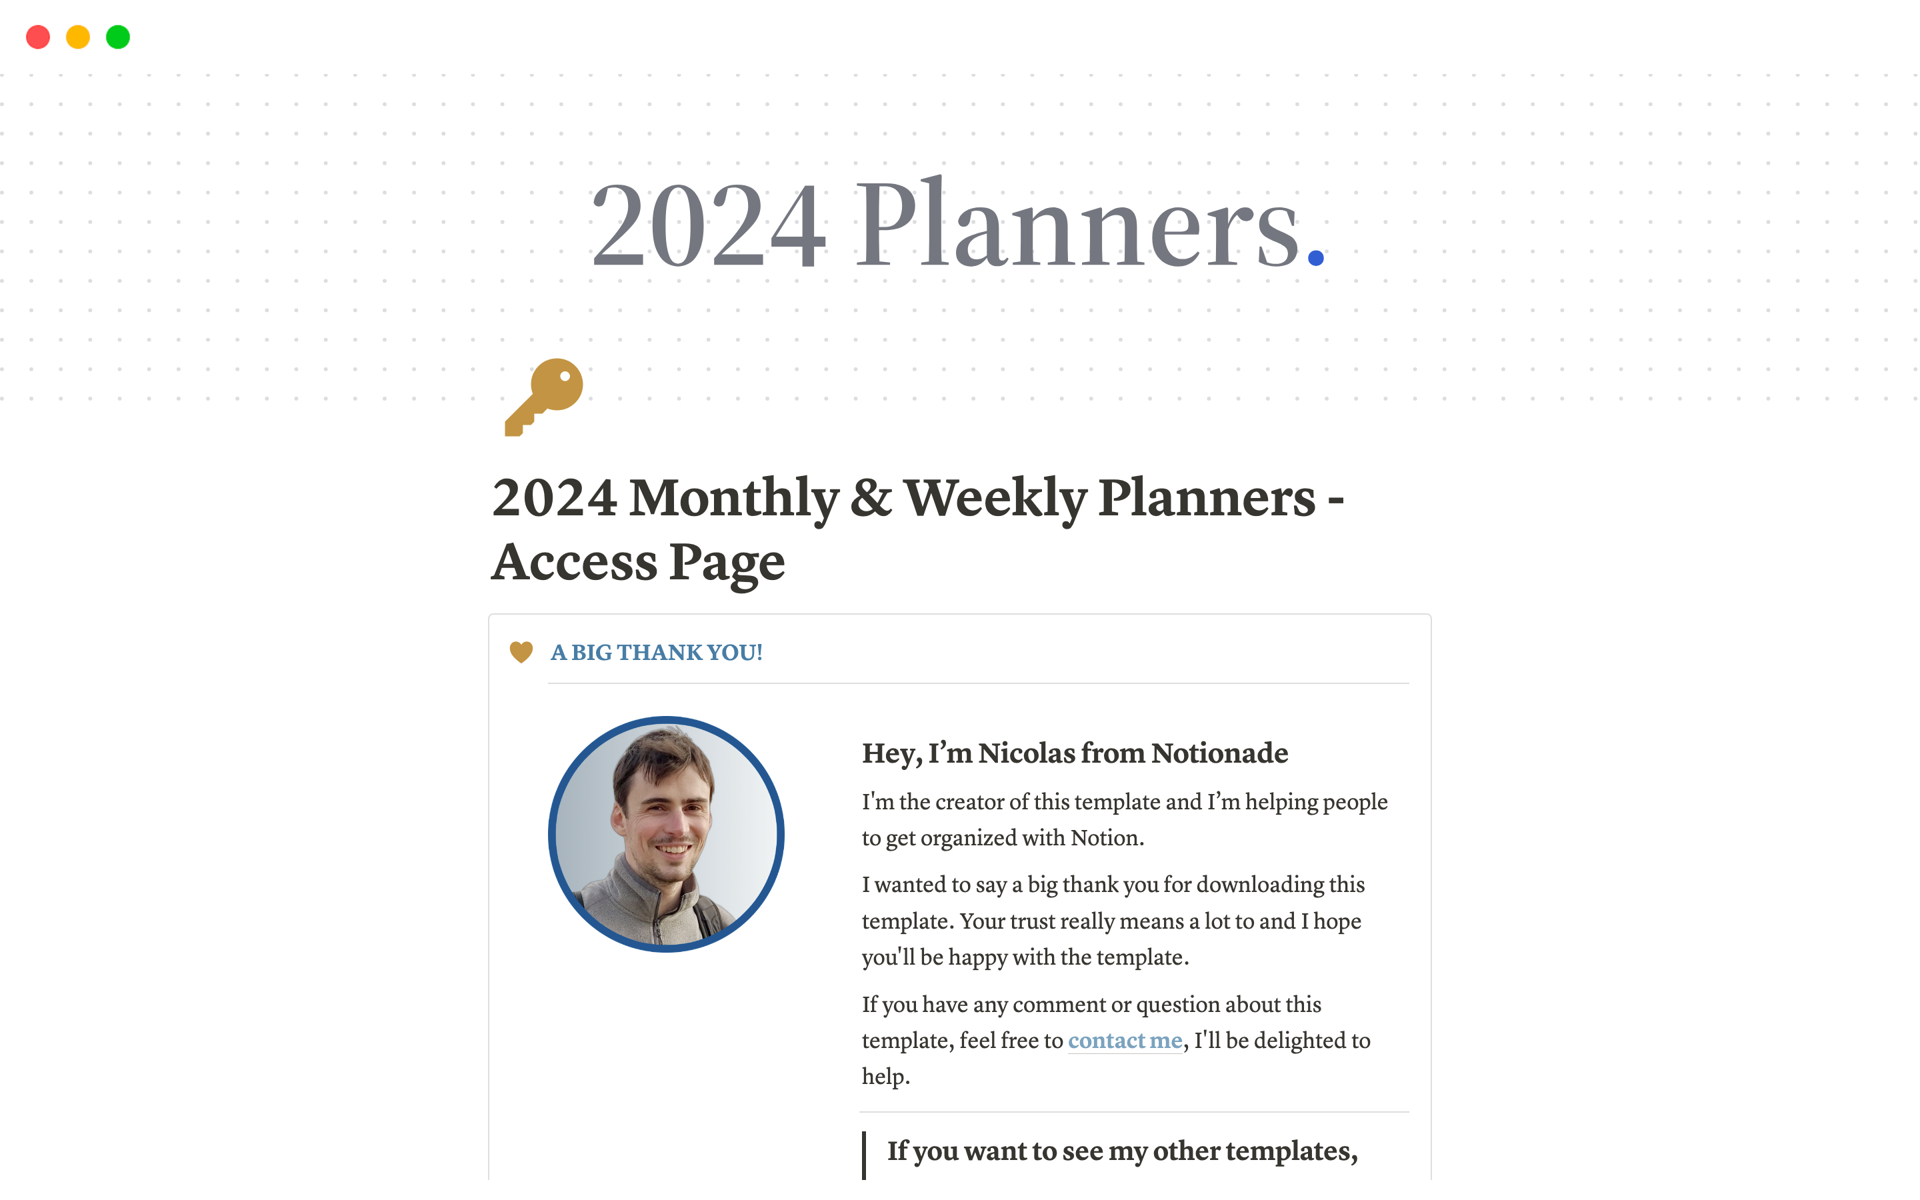 Uma prévia do modelo para 2024 Monthly & Weekly Planners